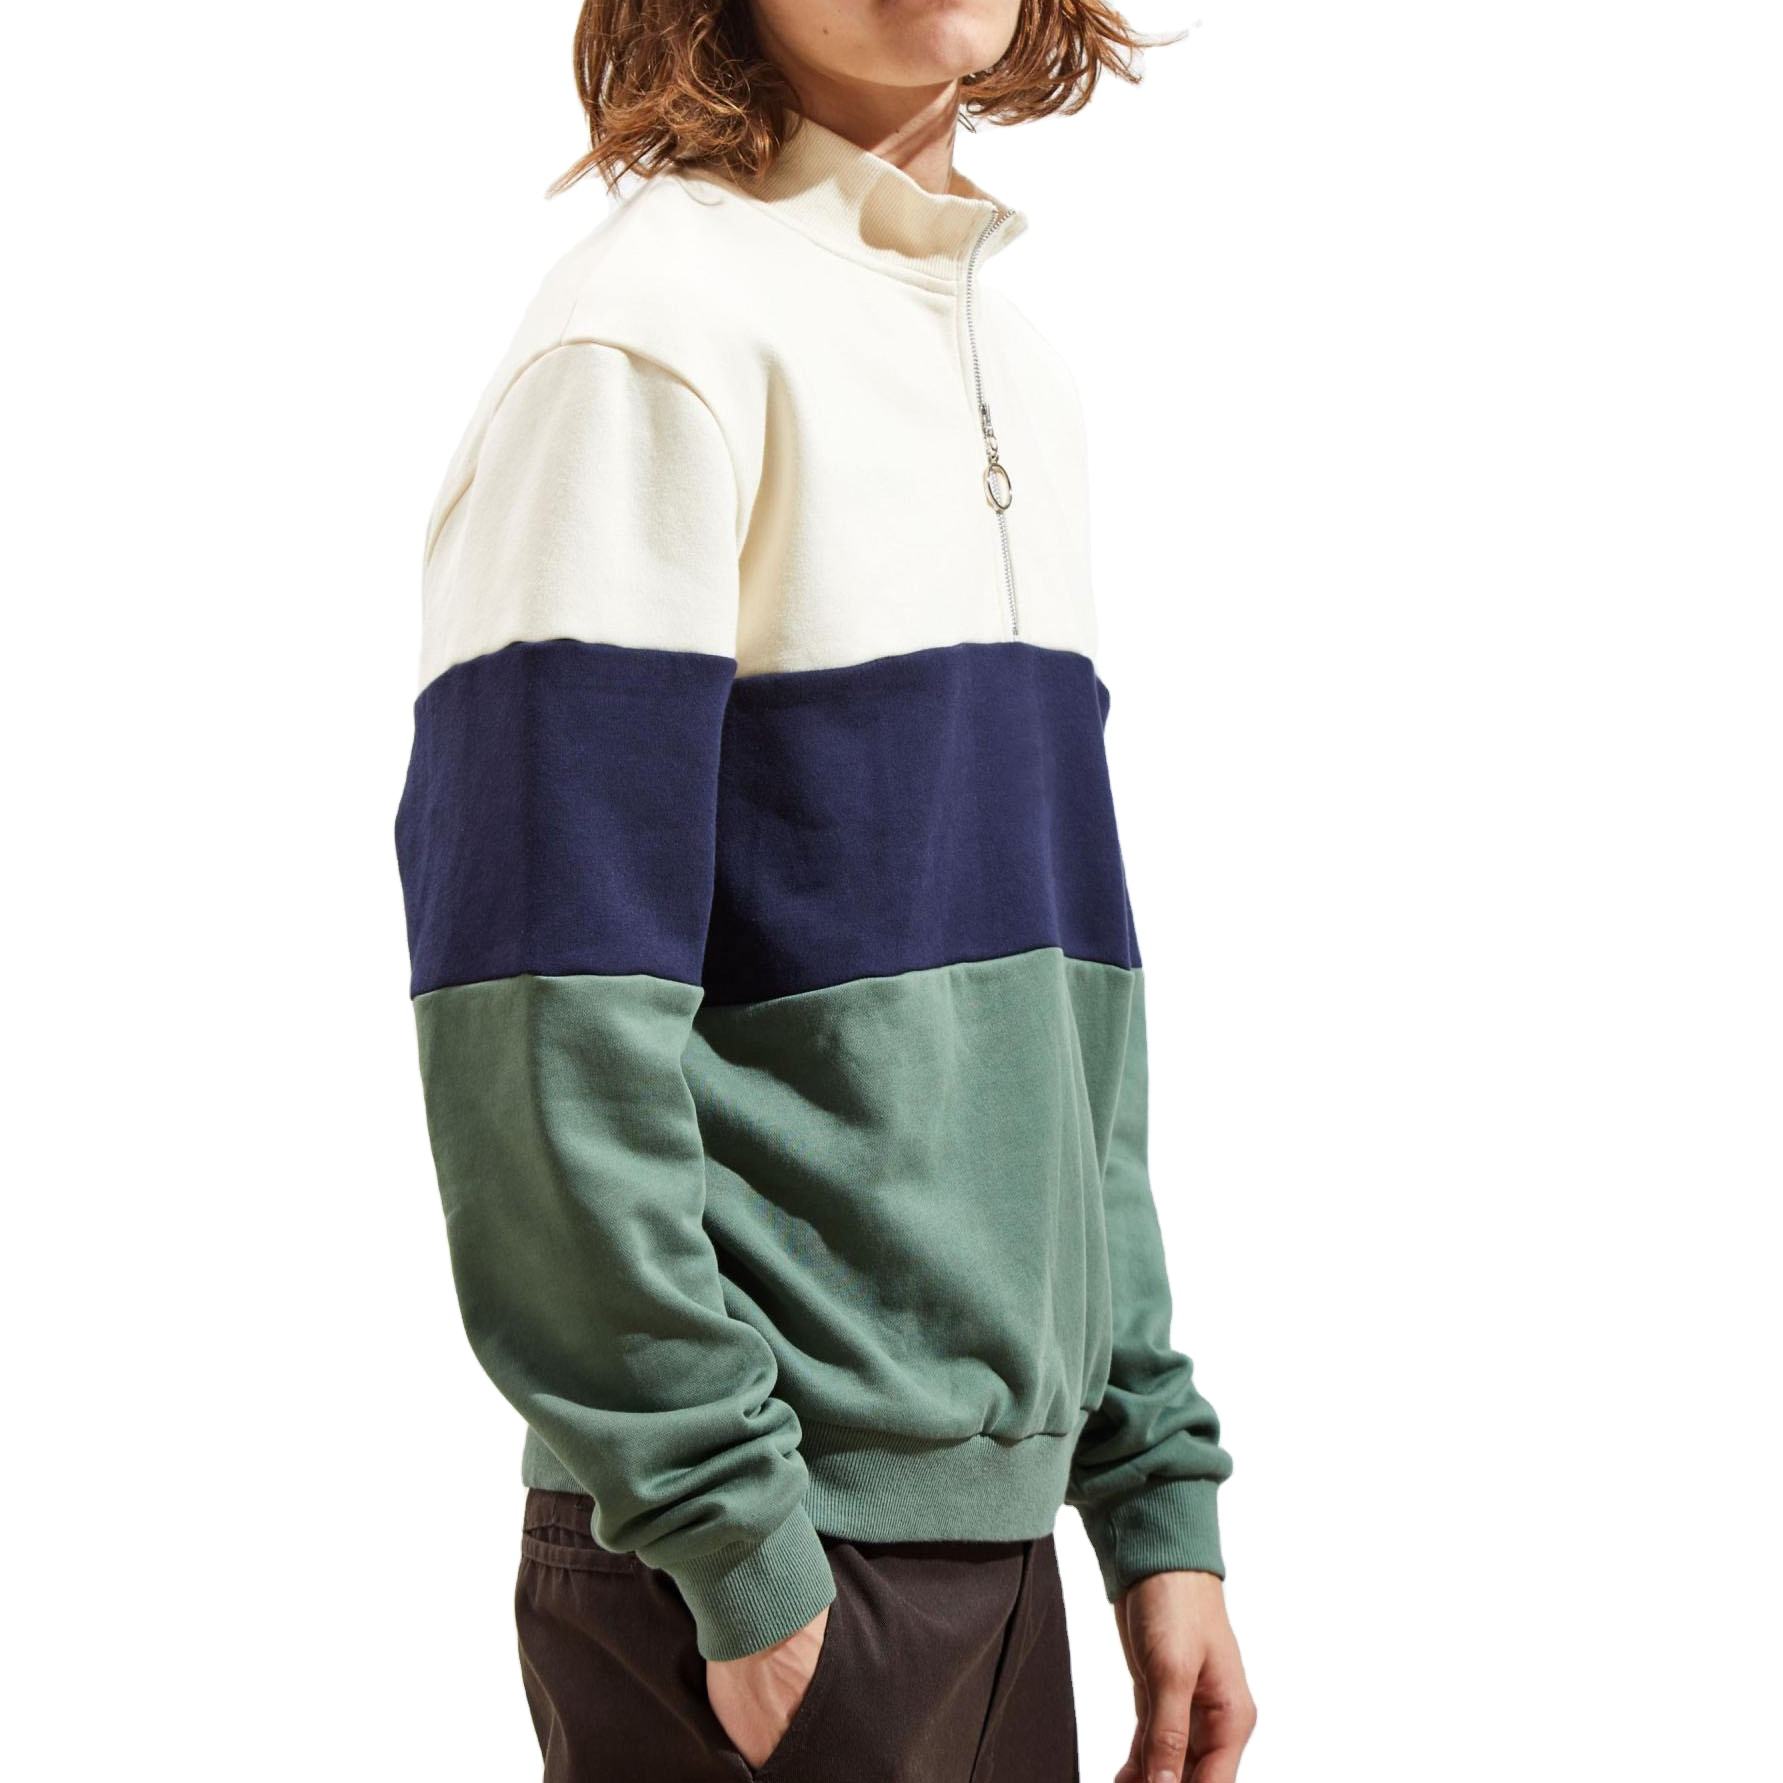 Користувальницькі оптові вуличні чоловічі пуловери, флісові толстовки з кольоровими блоками та напівзастібкою.